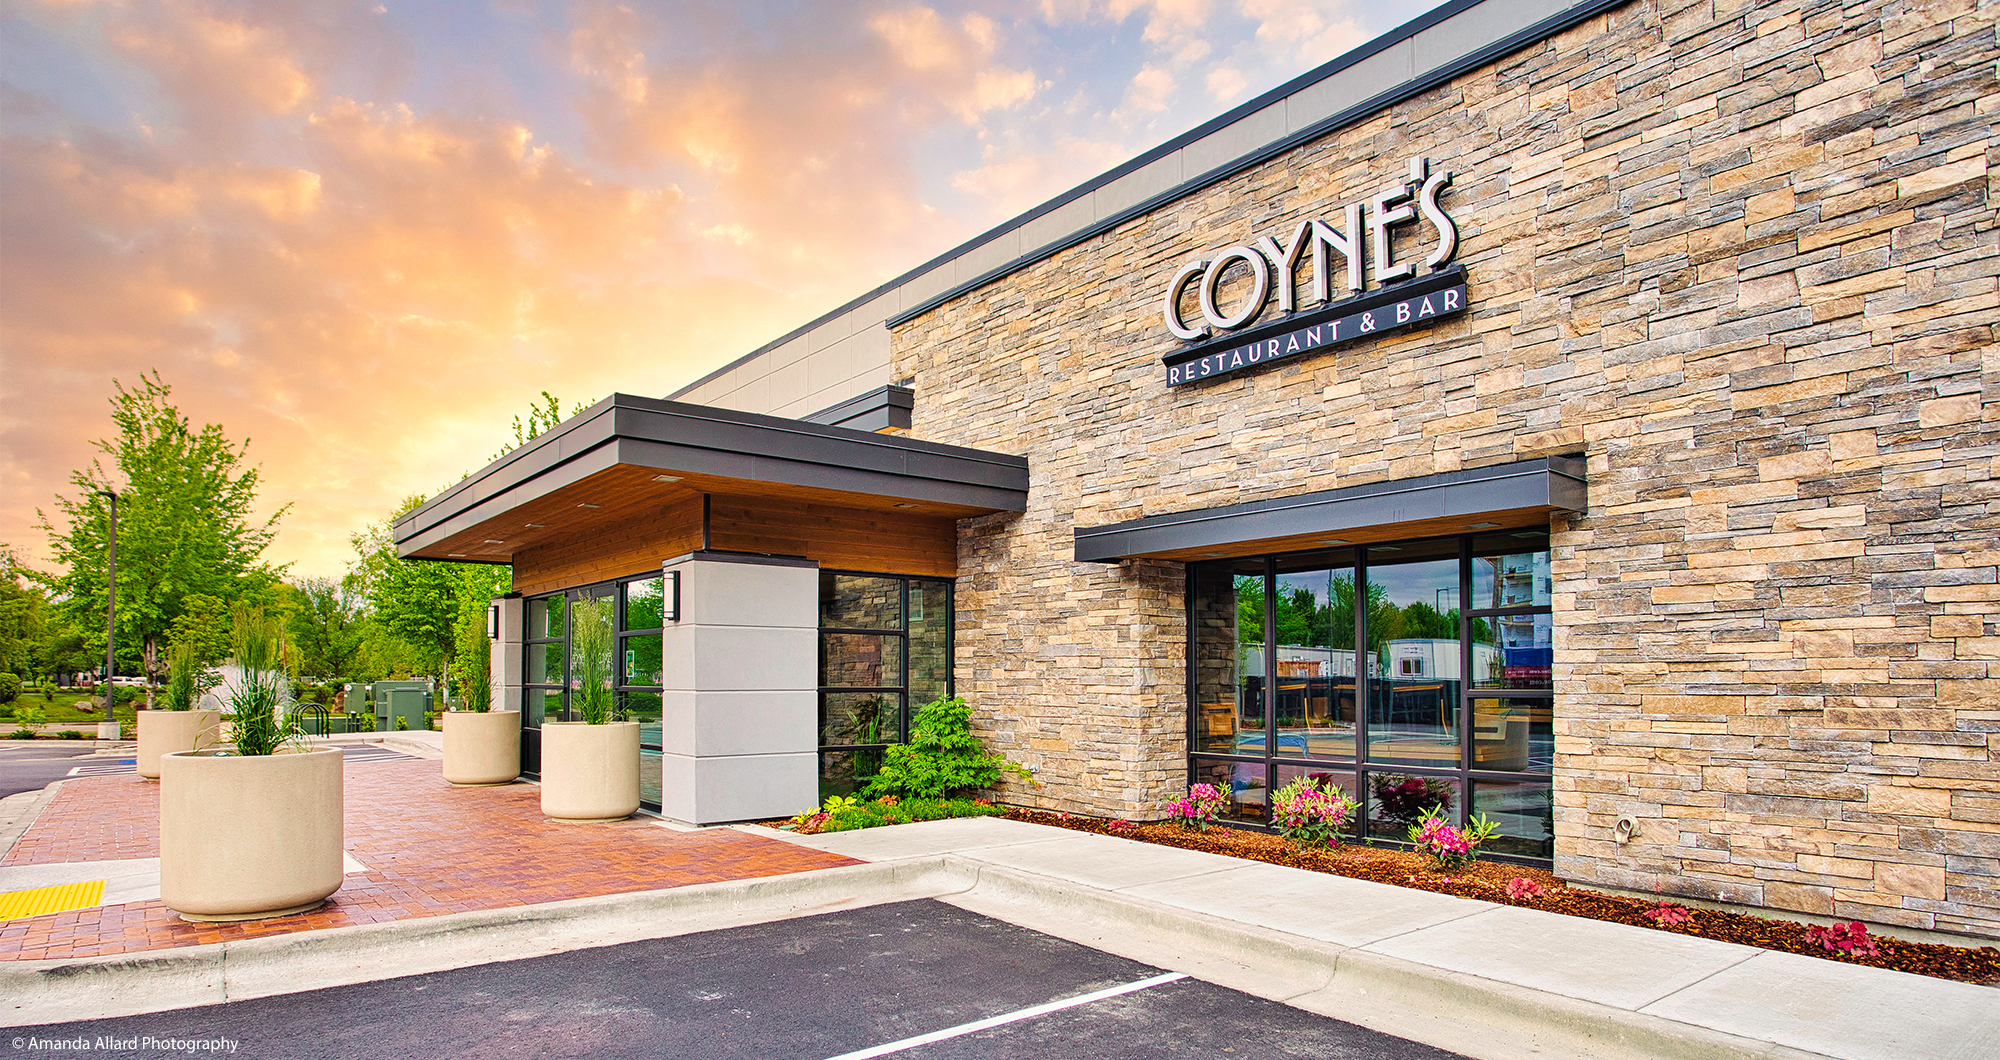 Coyne's